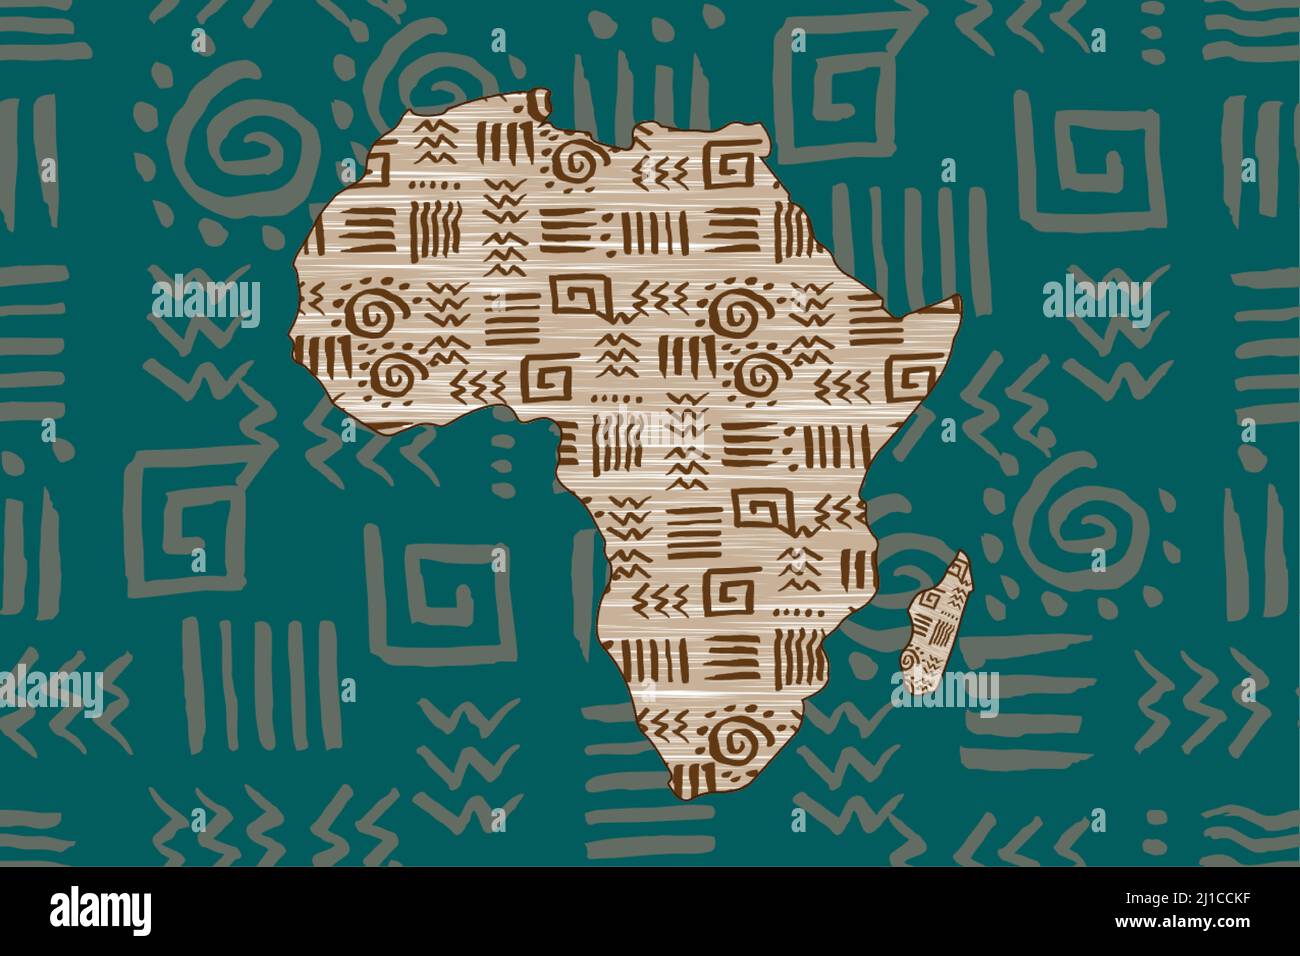 Africa mappa modellata e frame motivi etnici. Banner senza giunture con motivo tradizionale tribale africano grunge, elementi, concept design. Vettore etnico Illustrazione Vettoriale